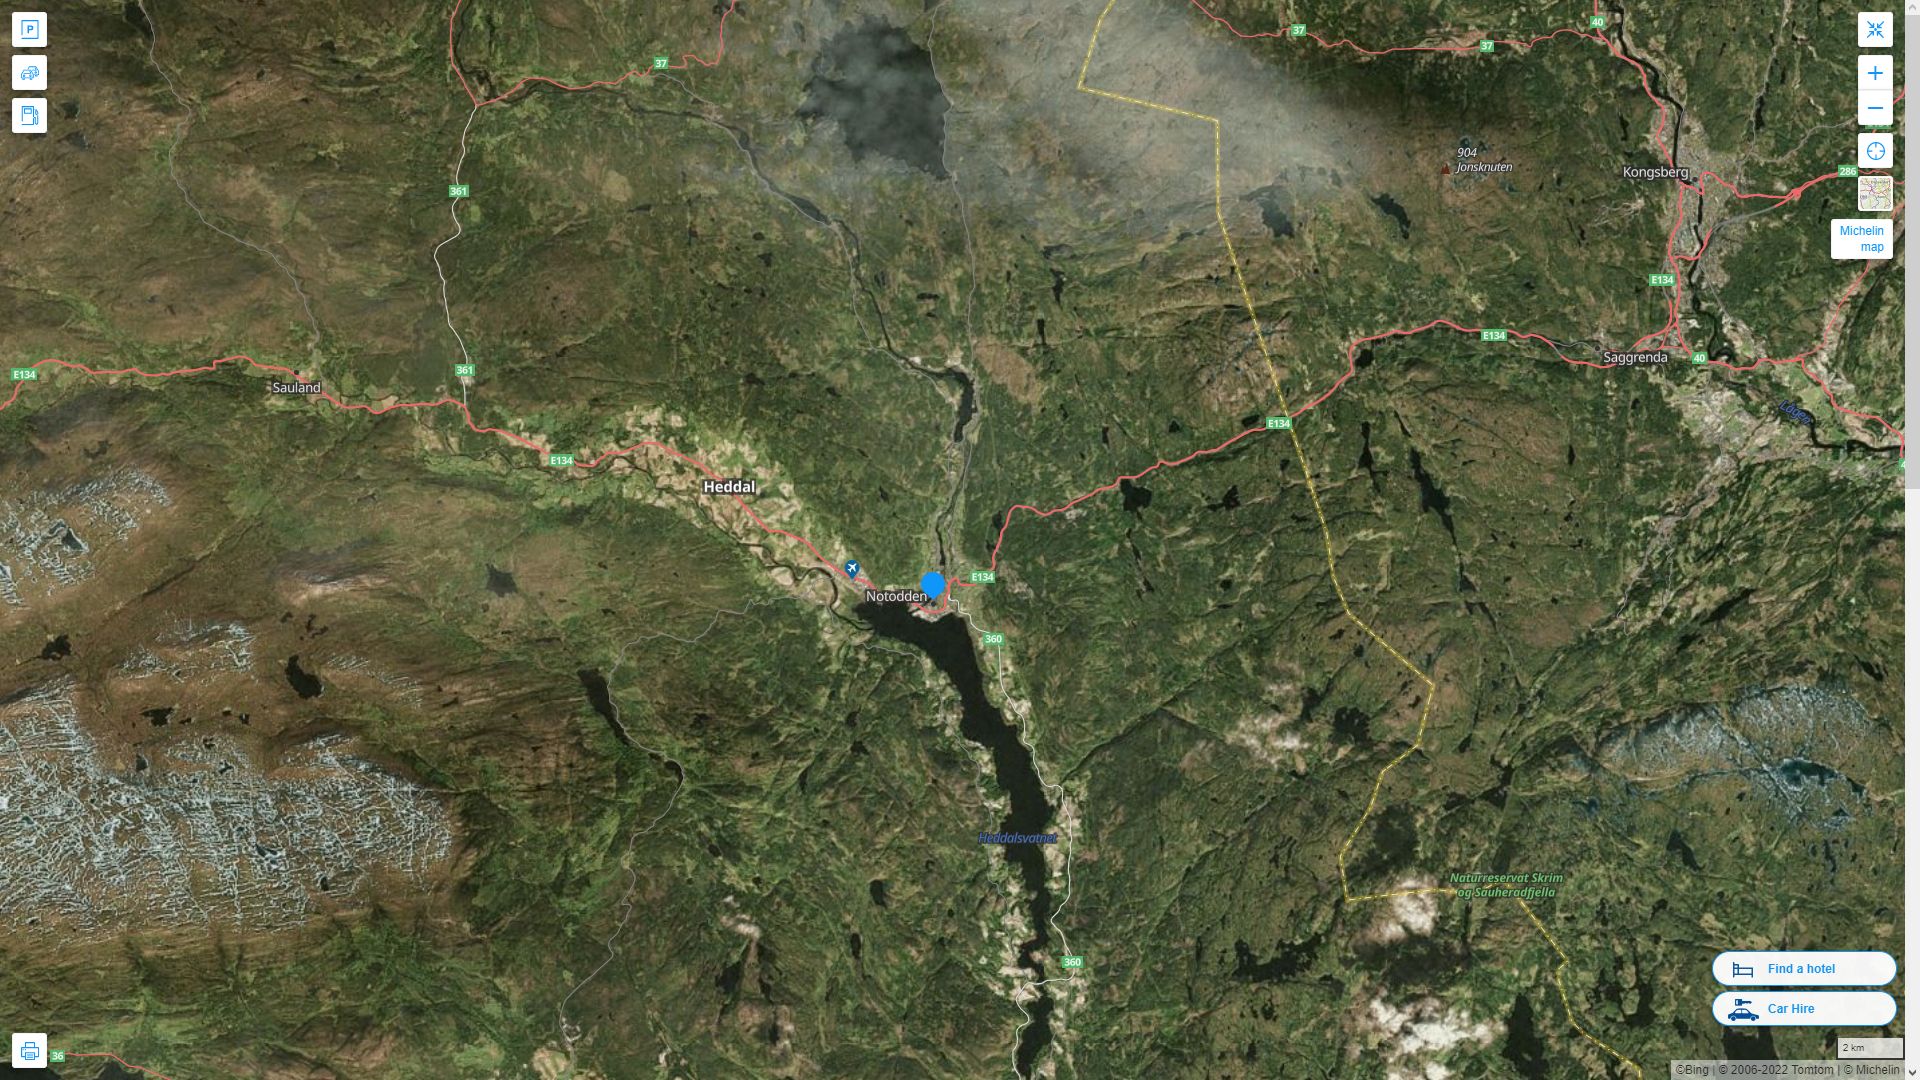 Notodden Norvege Autoroute et carte routiere avec vue satellite